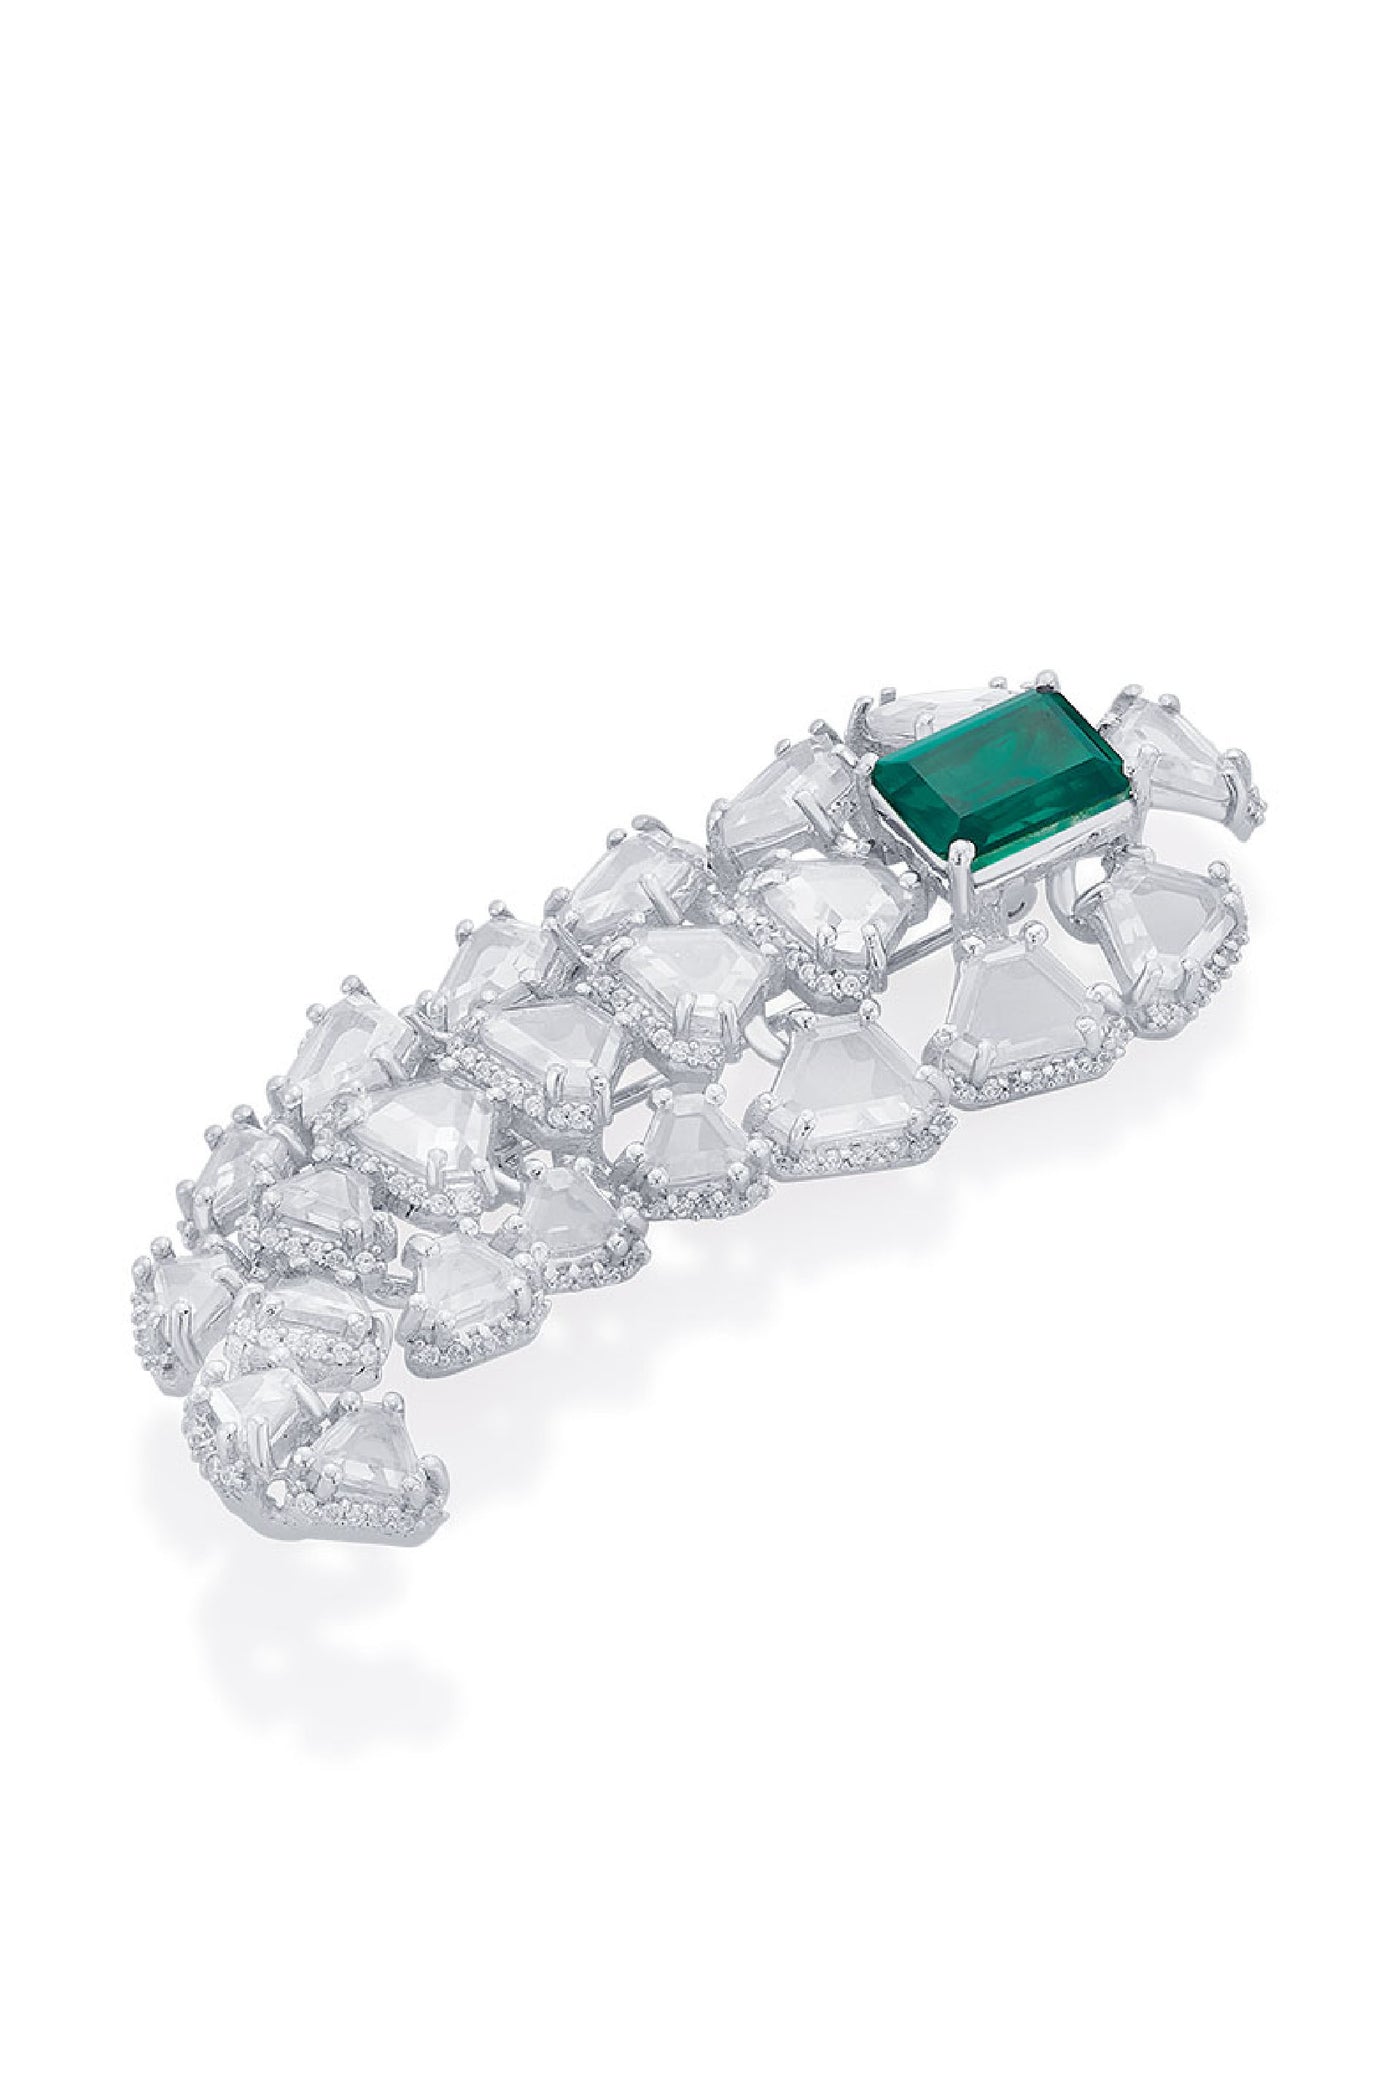 Isharya Amalfi Emerald Doublet 925 Silver Kalgi jewellery indian designer wear online shopping melange singapore